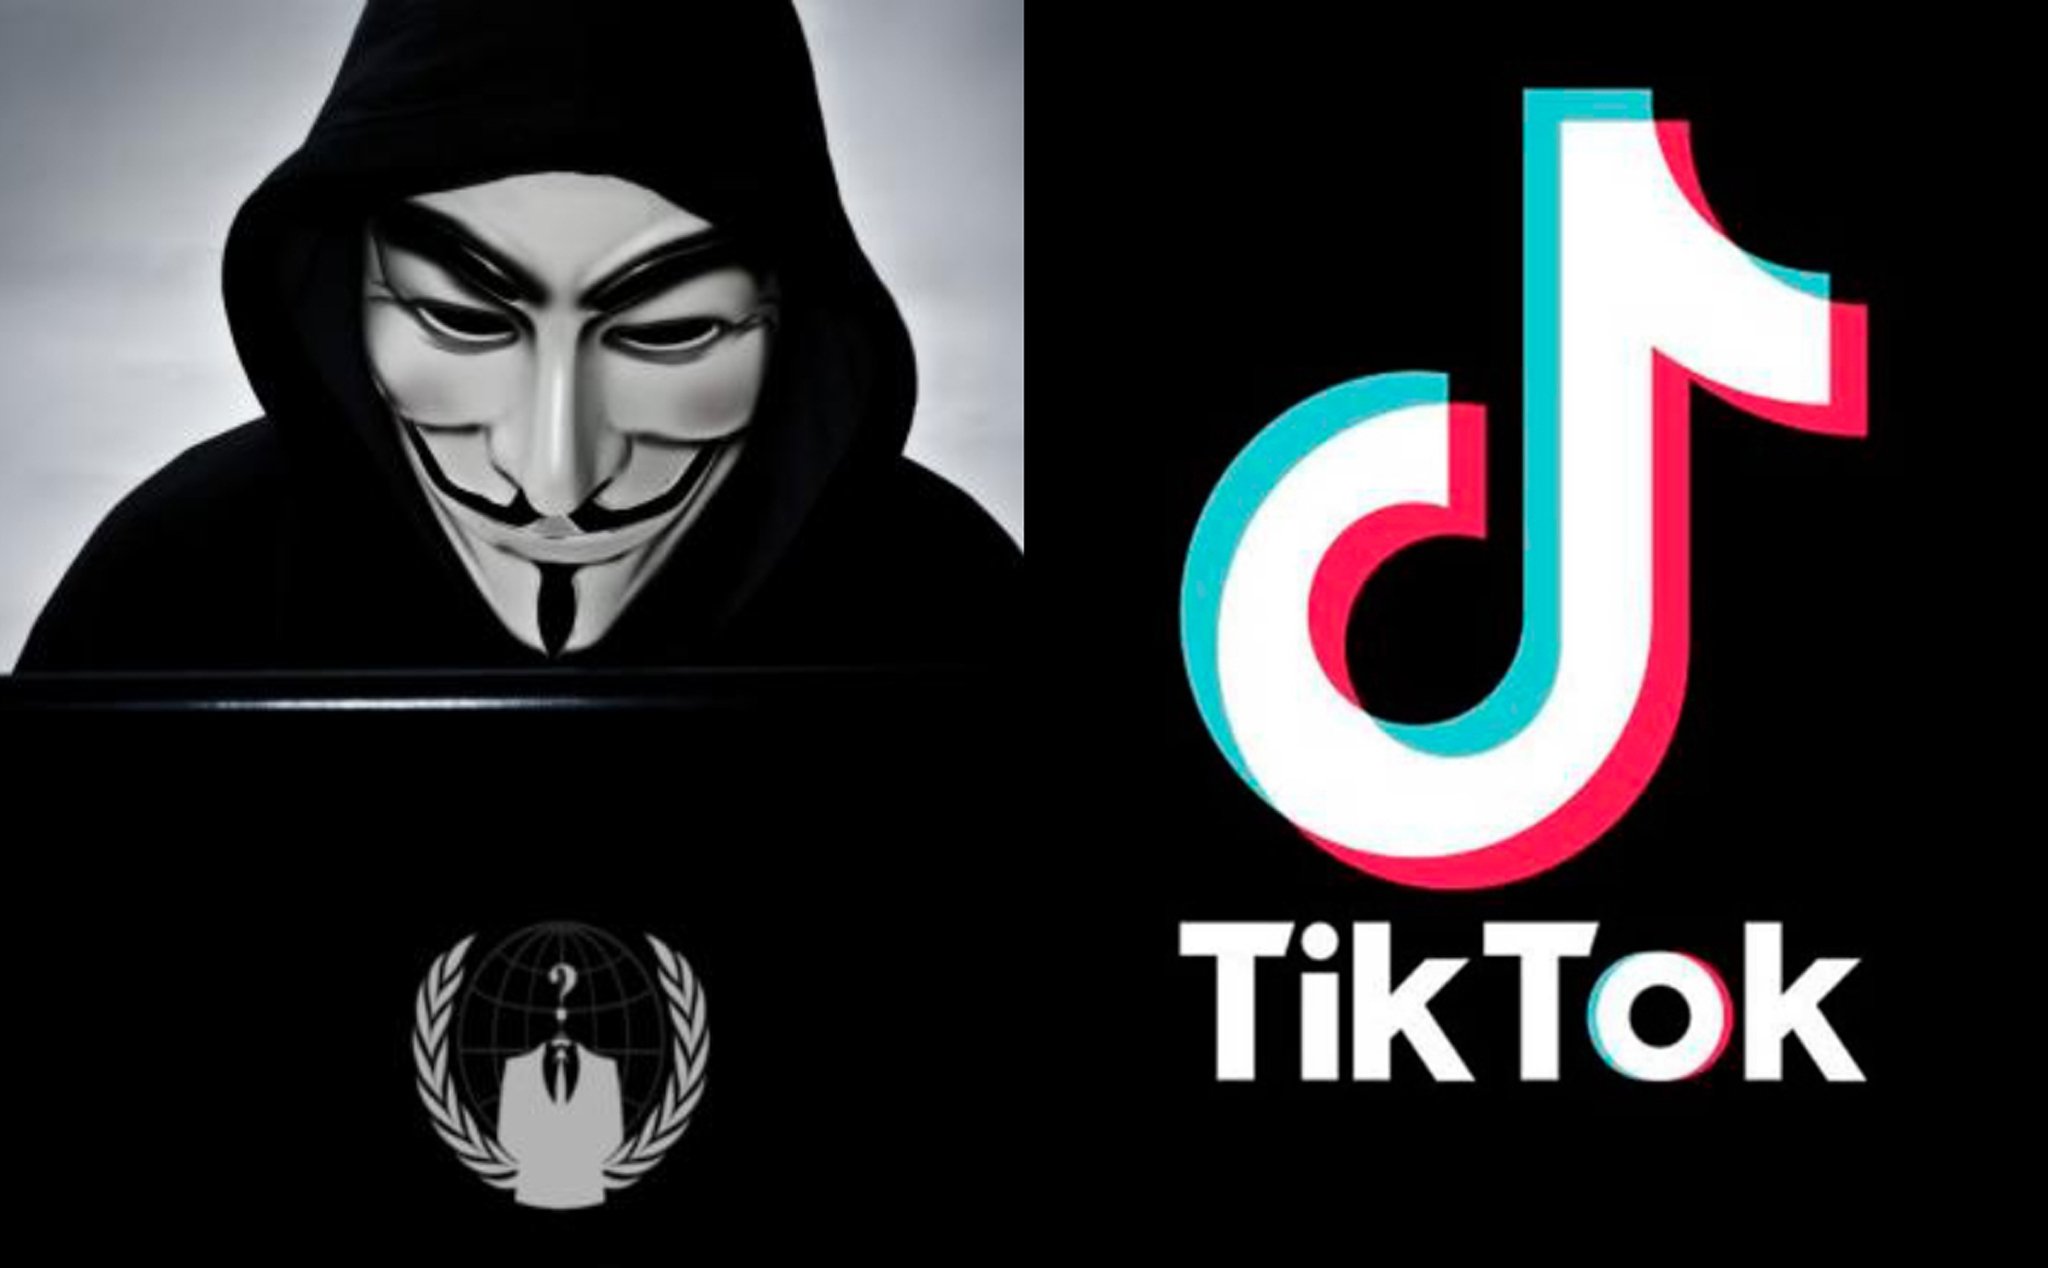 Nhóm hacker Anonymous kêu gọi: "Delete Tiktok now!"